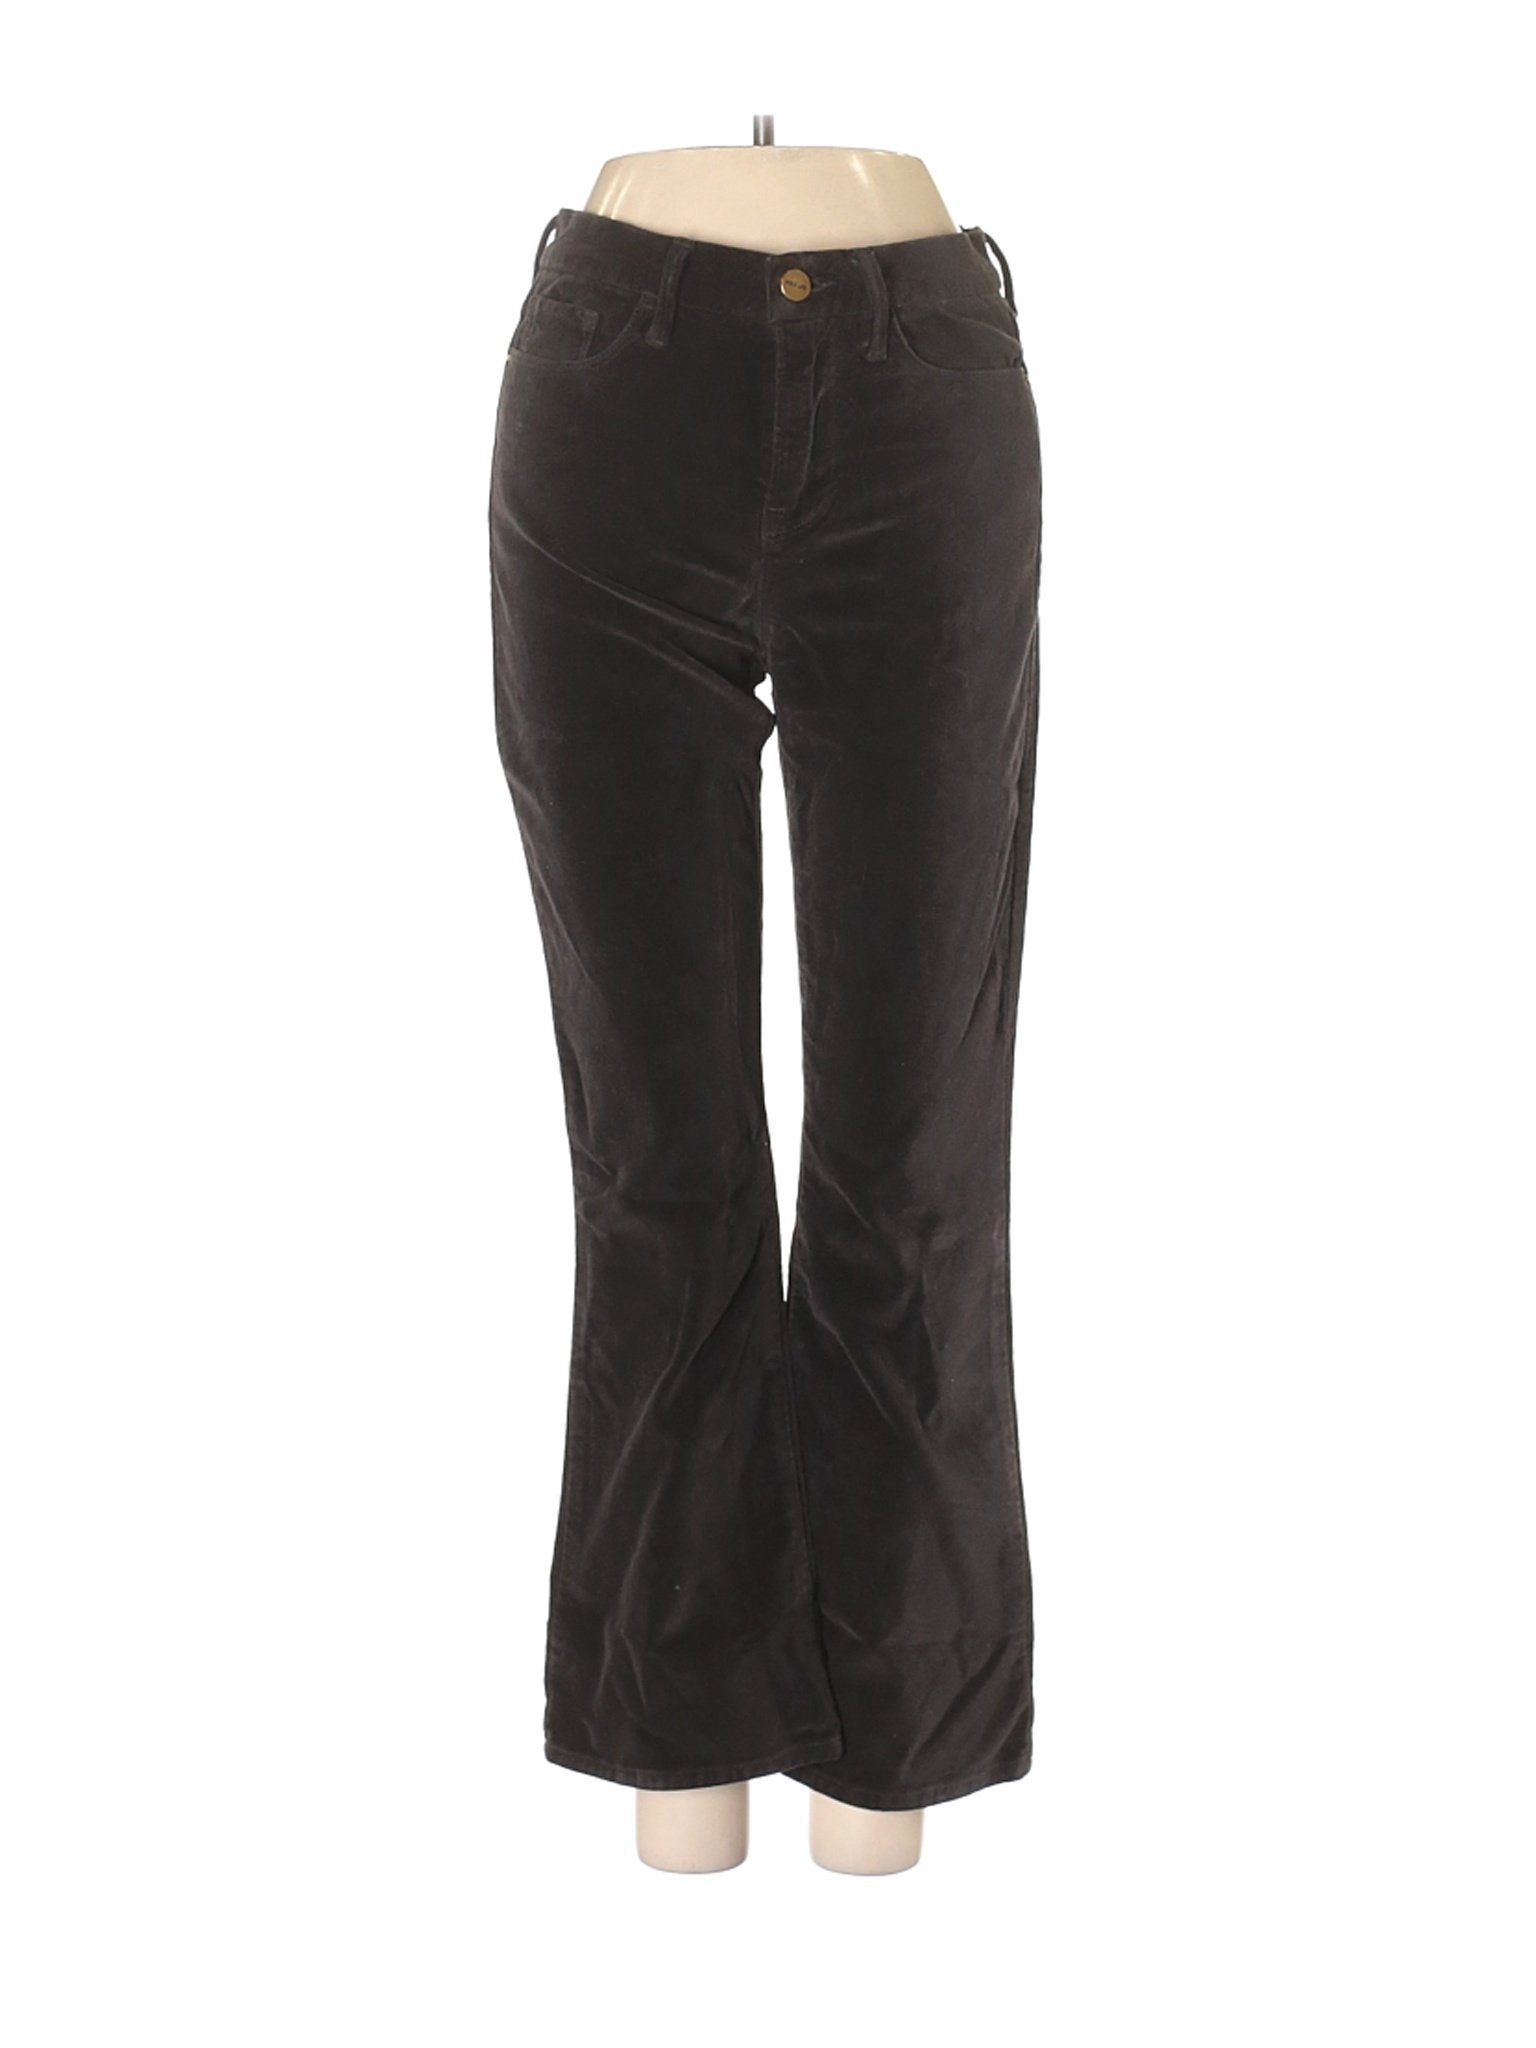 FRAME Denim Women Black Velour Pants 25W | eBay